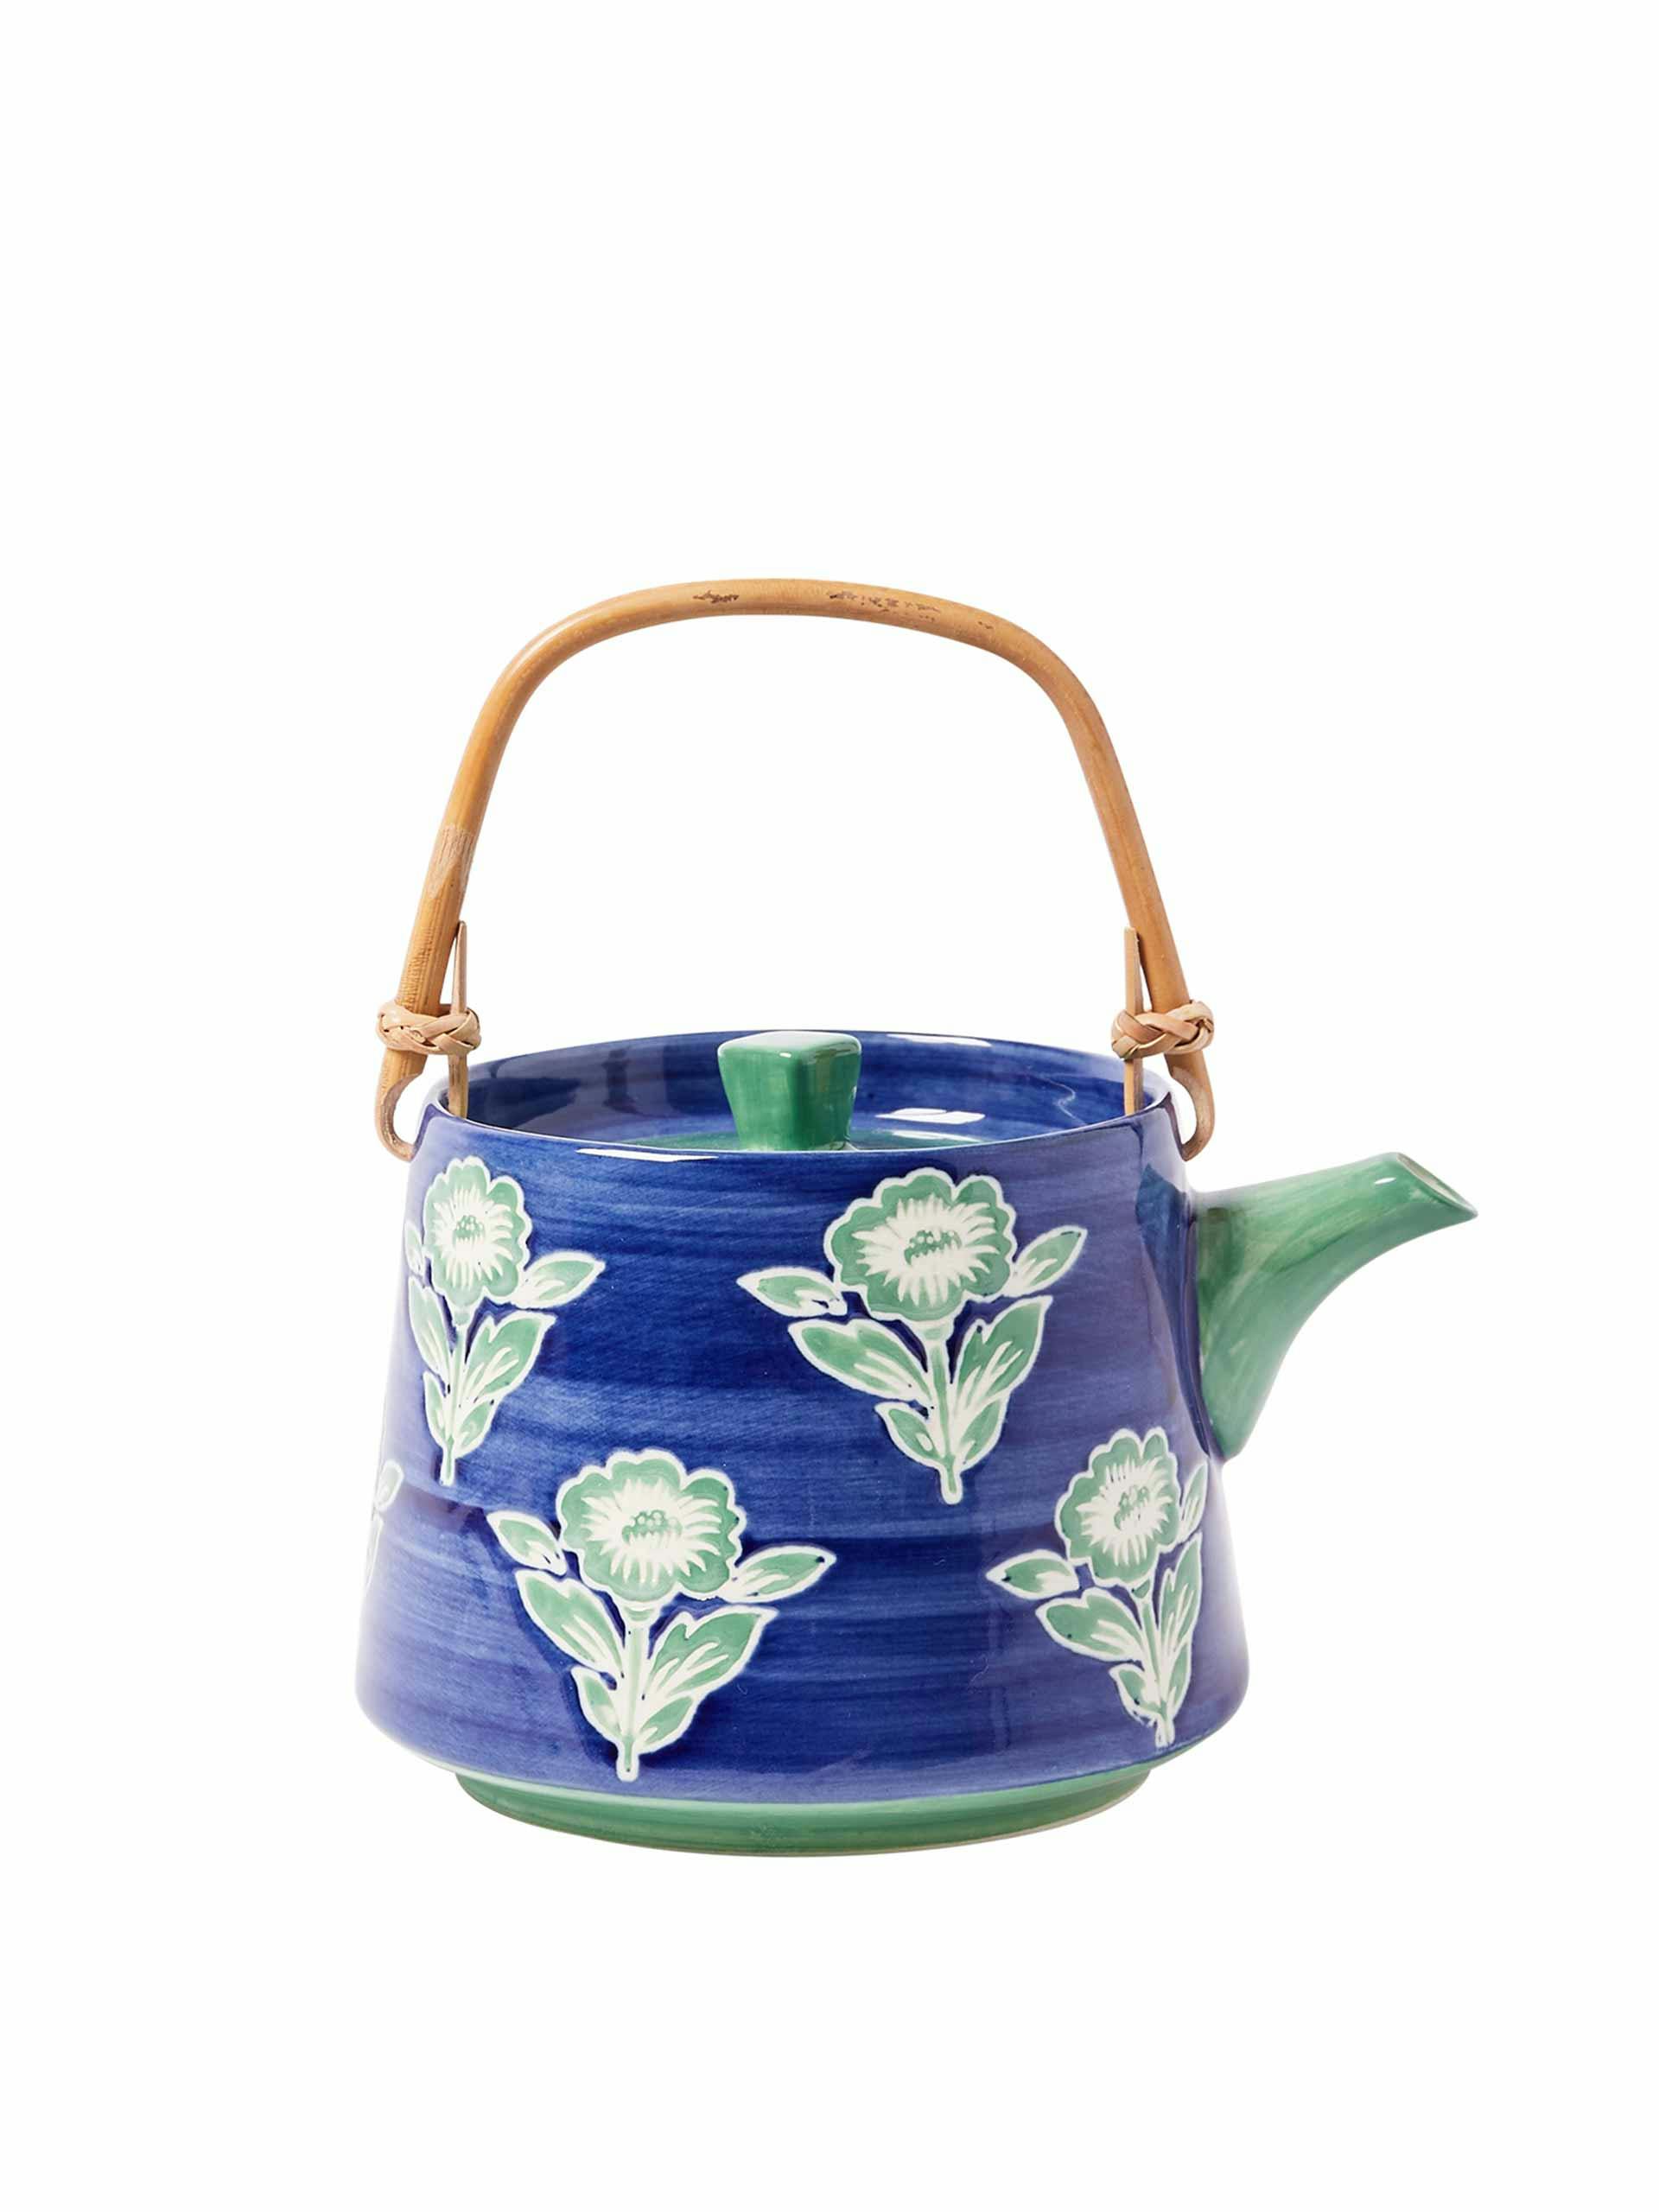 Floral blue ceramic teapot